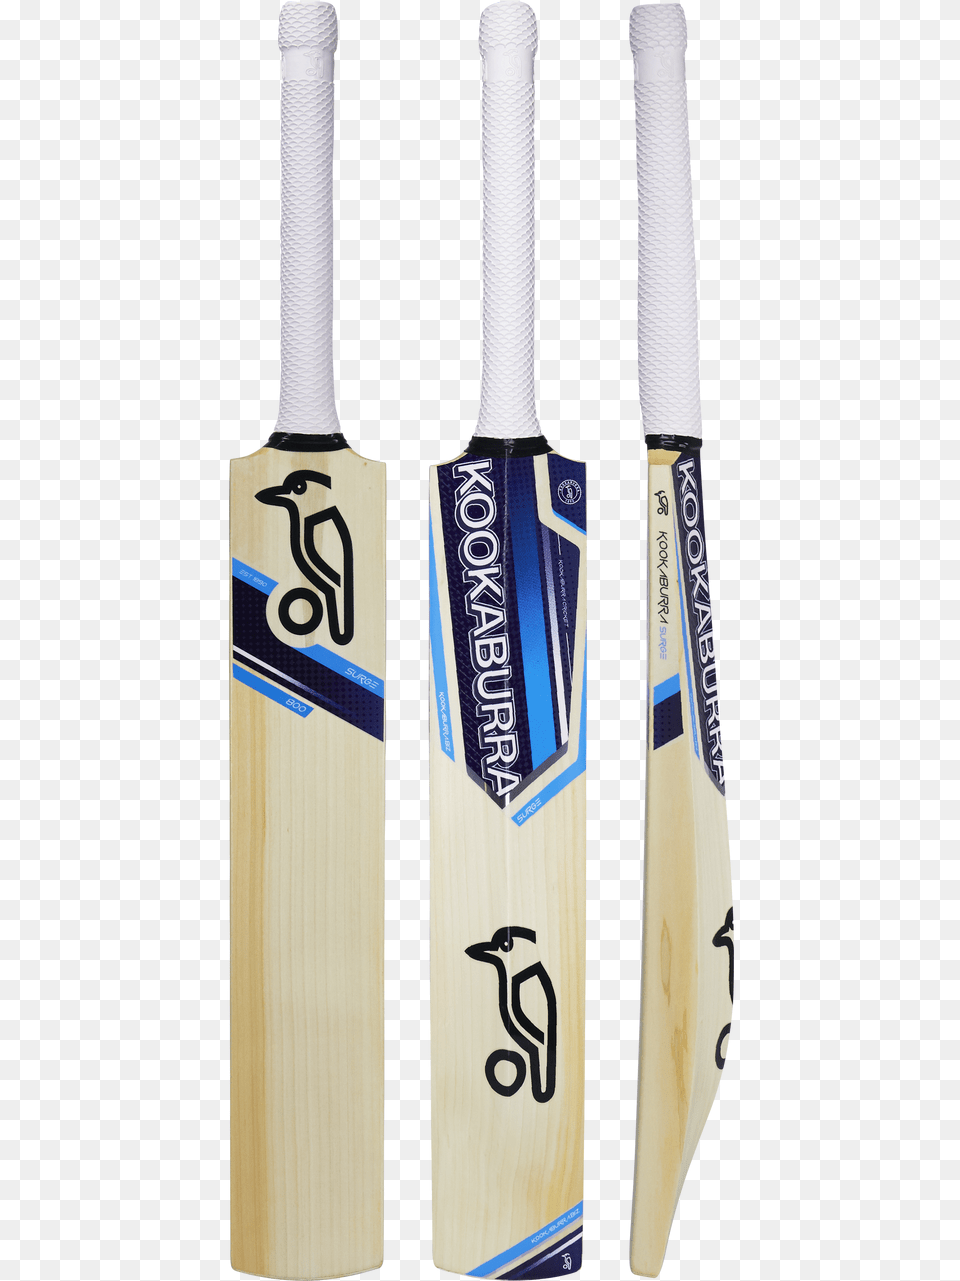 Kookaburra Bat English Willow, Cricket, Cricket Bat, Sport, Text Png Image